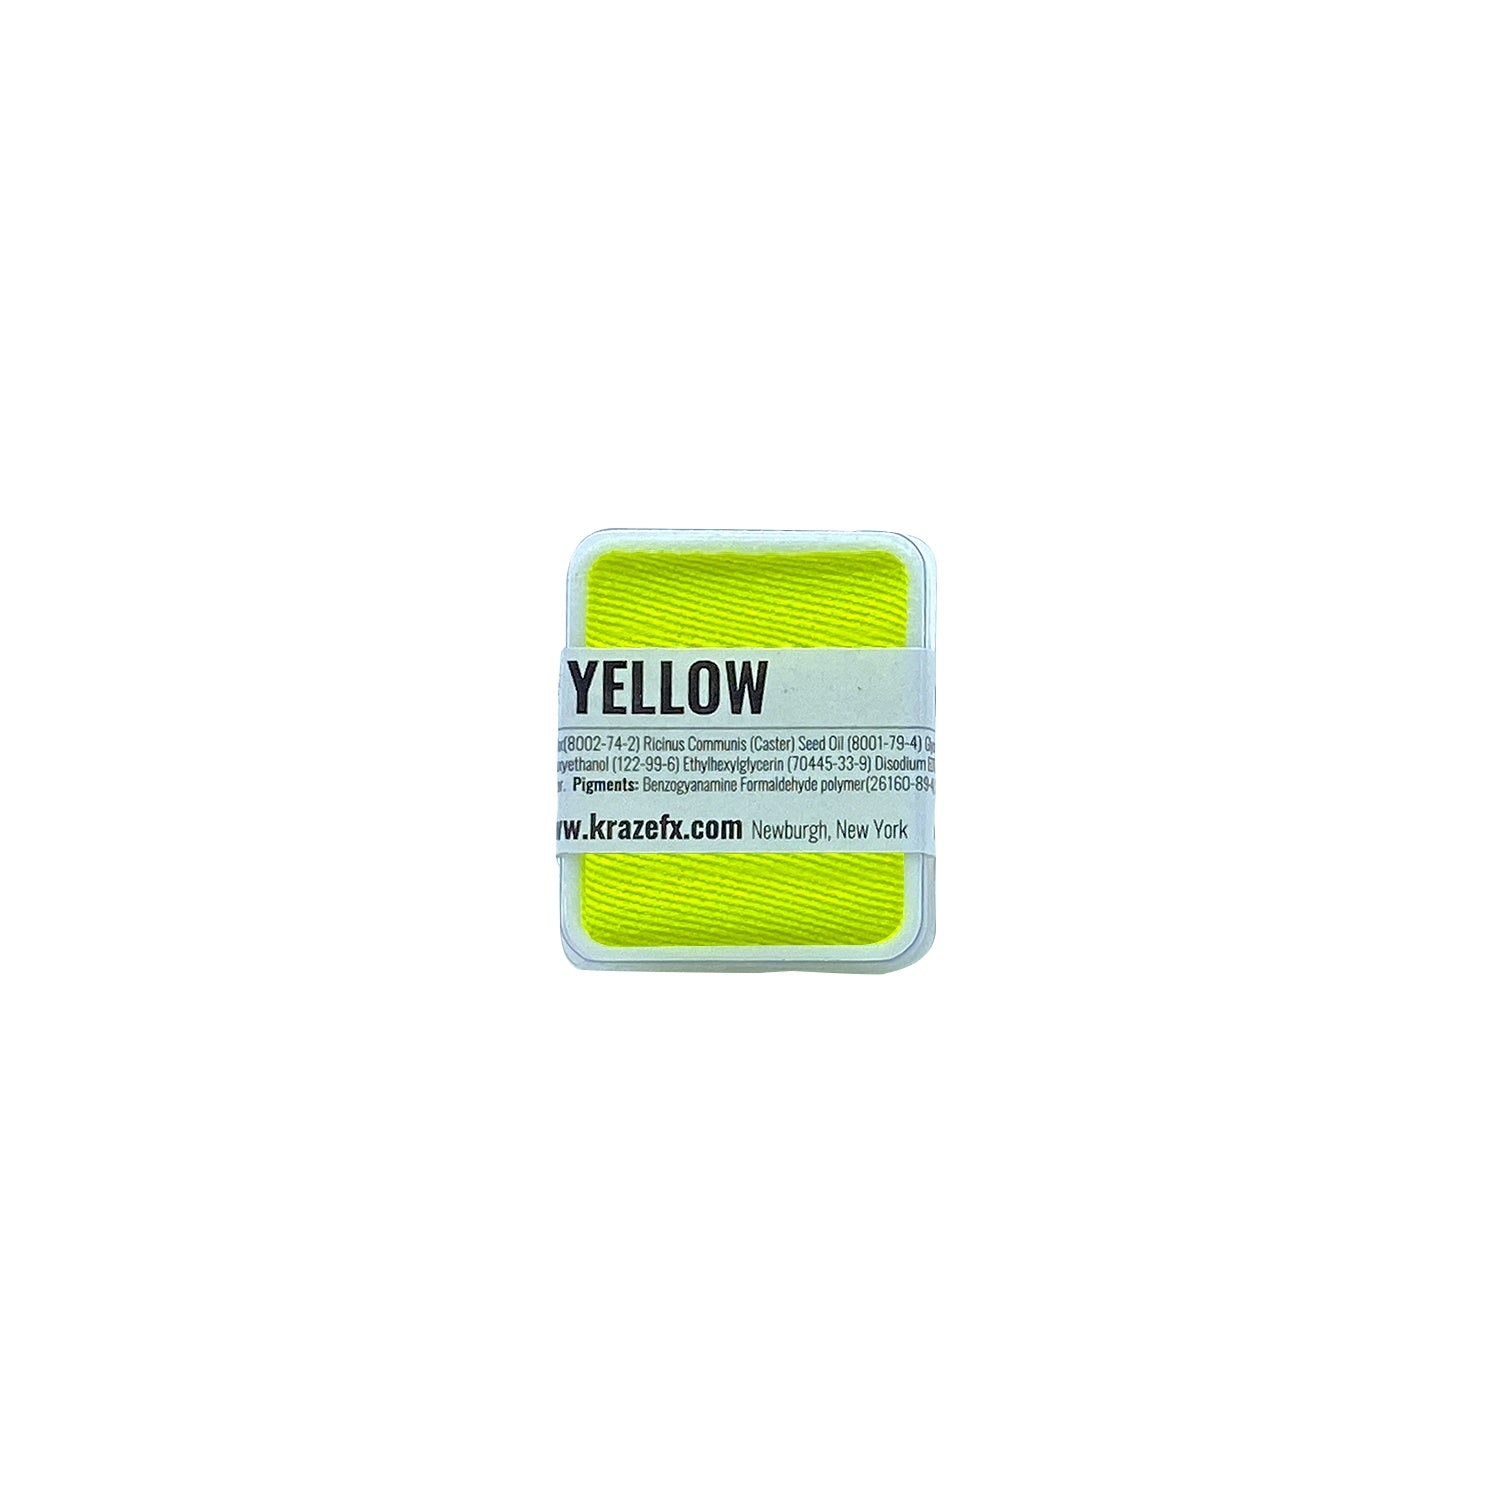 Kraze FX Face Paint Refill - Neon Yellow (6 gm)